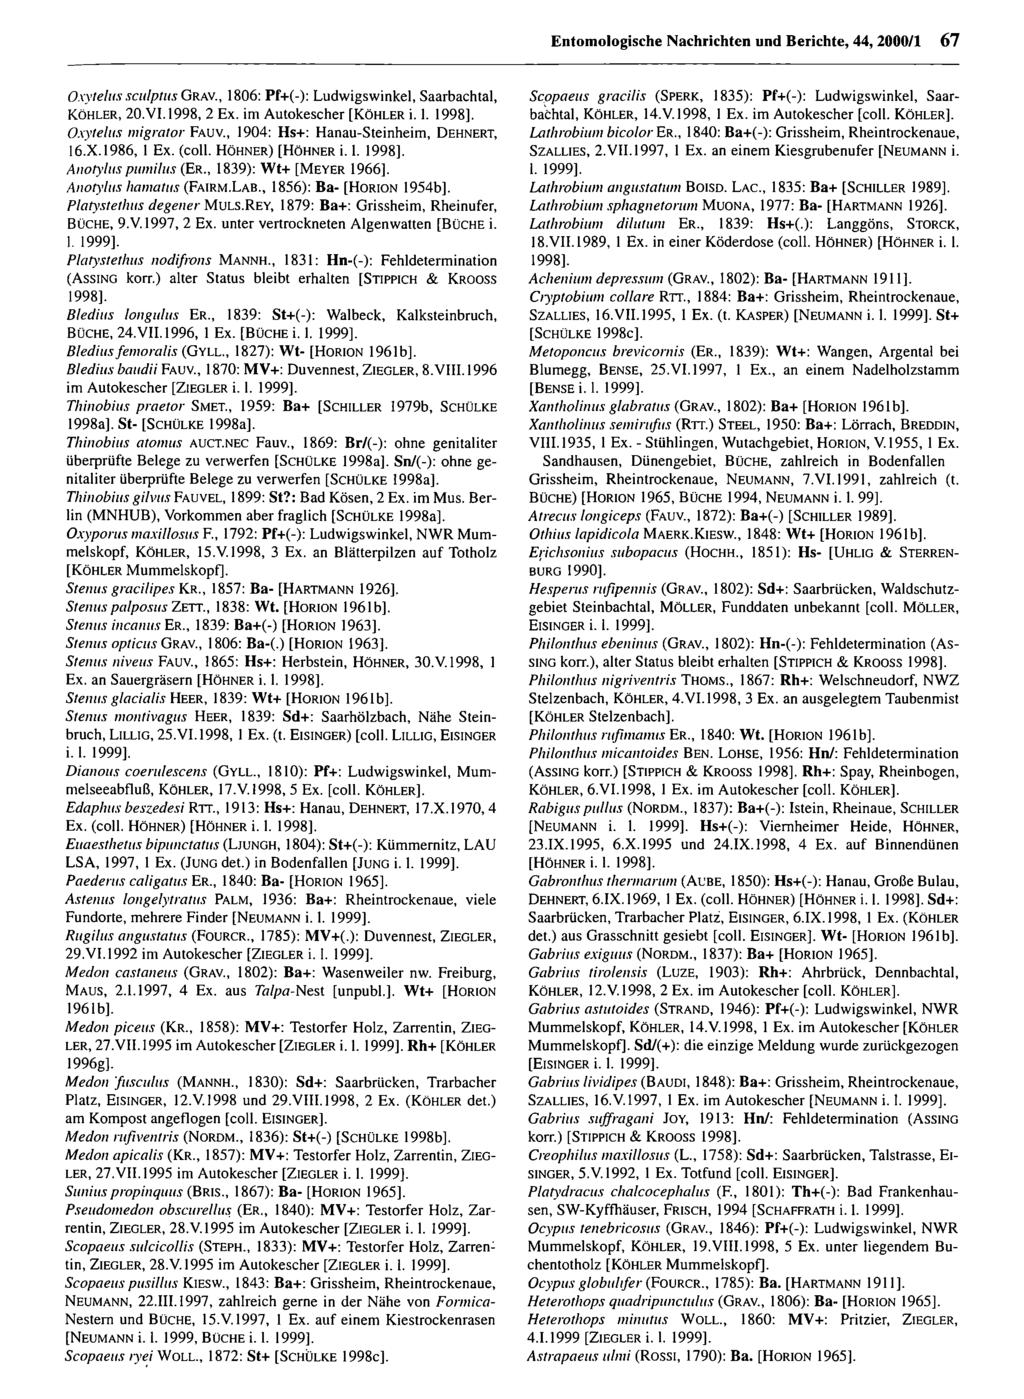 Entomologische Nachrichten und Berichte; download Entomologische unter www.biologiezentrum.at Nachrichten und Berichte, 44, 2000/1 67 Oxytelus sculptus G ra v.